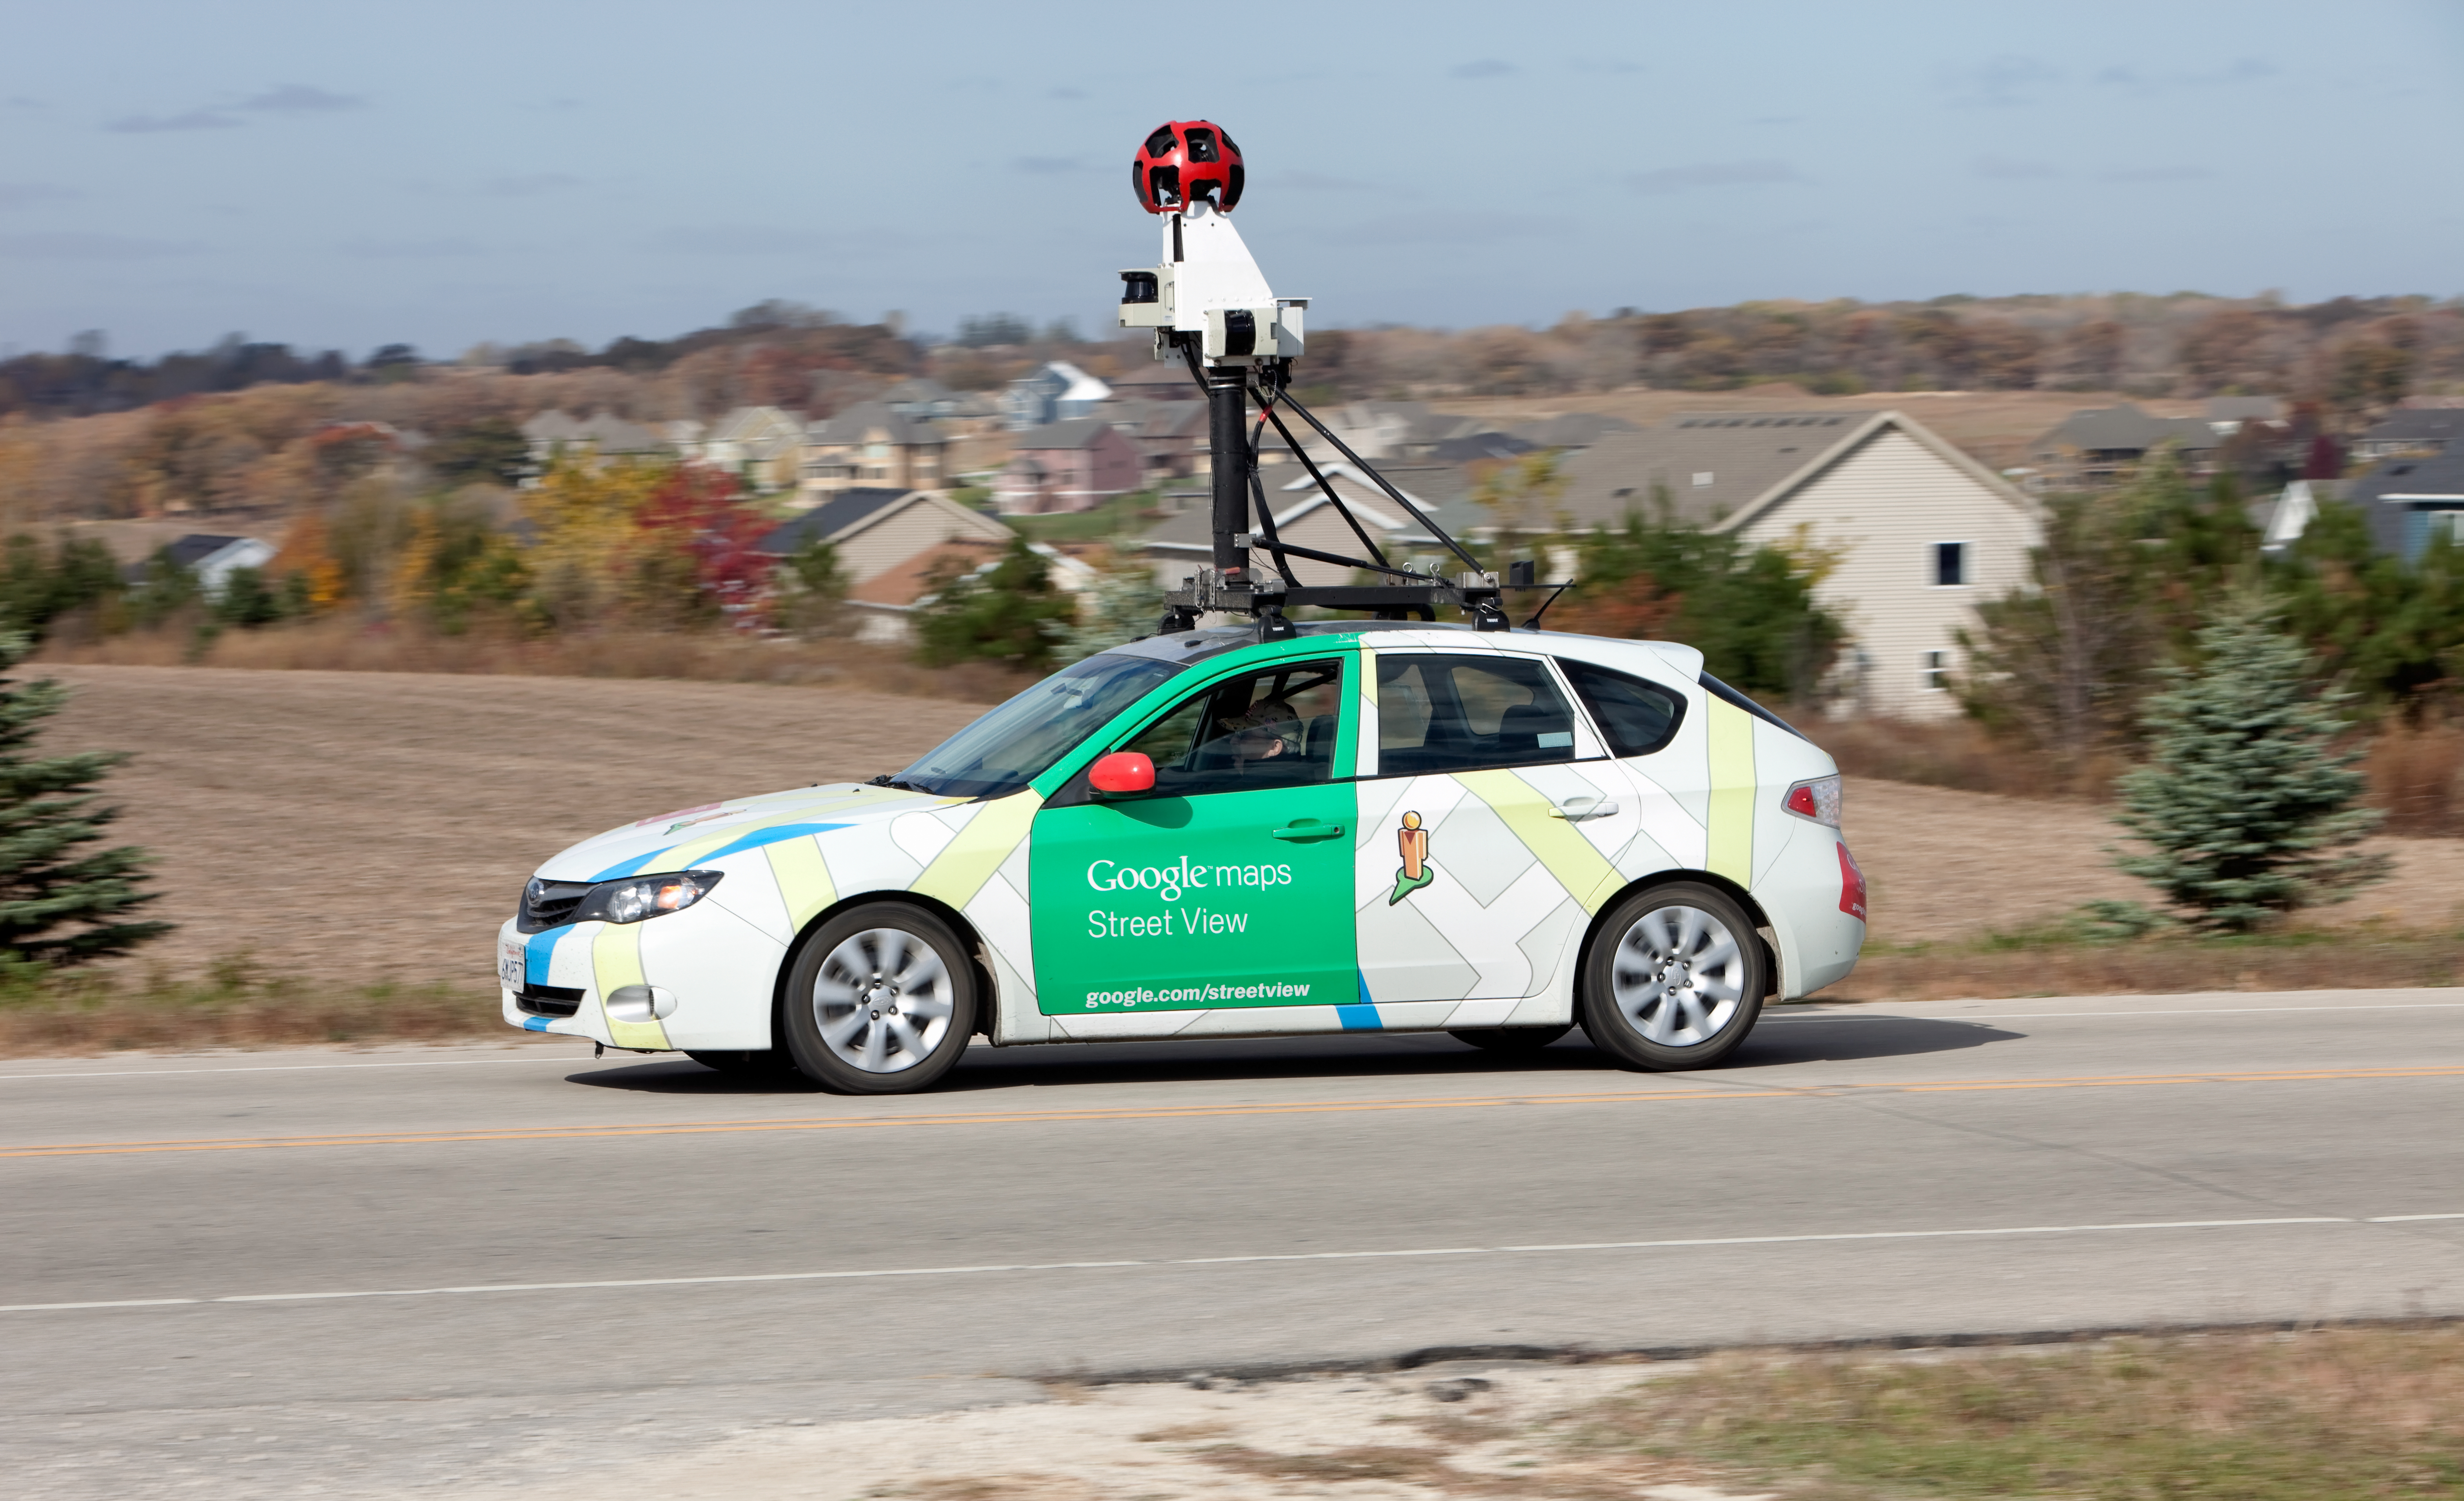 La voiture Google Street View sillonne les rues de villes du monde entier.